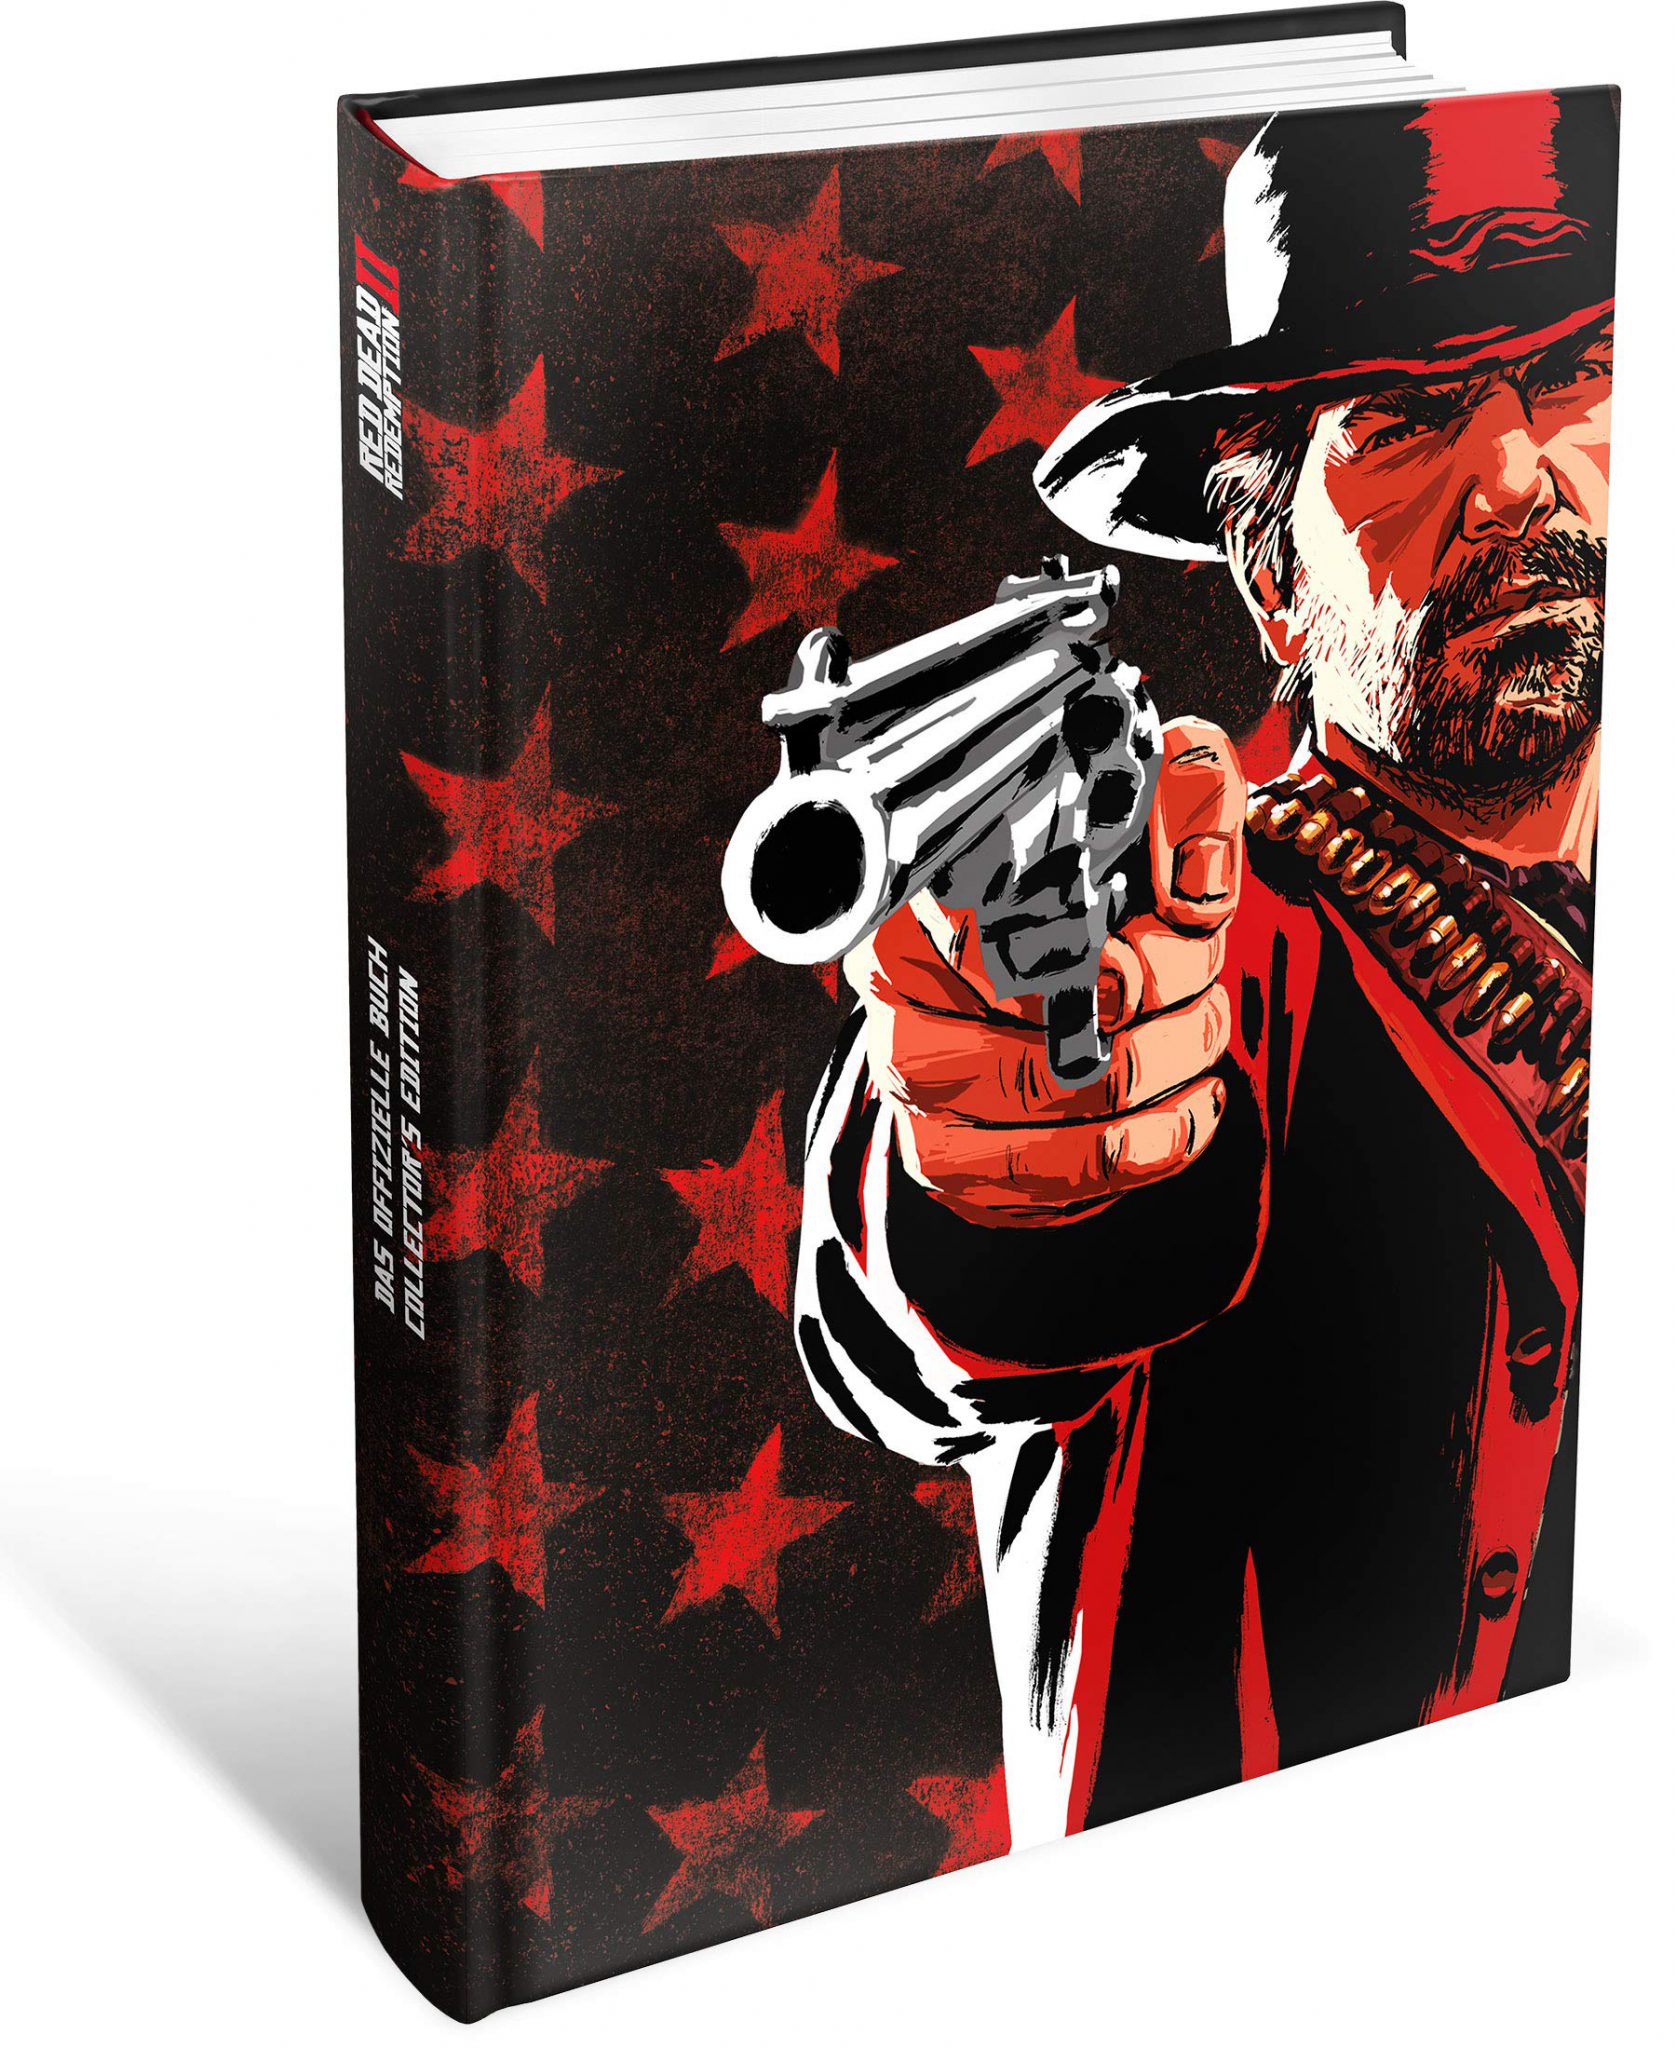 Piggyback Interactive Lösungsbuch Red Dead Redemption 2 Das offizielle Buch RDR 2 PS4 Pro Xbox One X Review Test Kritik Titel Arthur Morgan Dutch Van der Linde Western Wild West